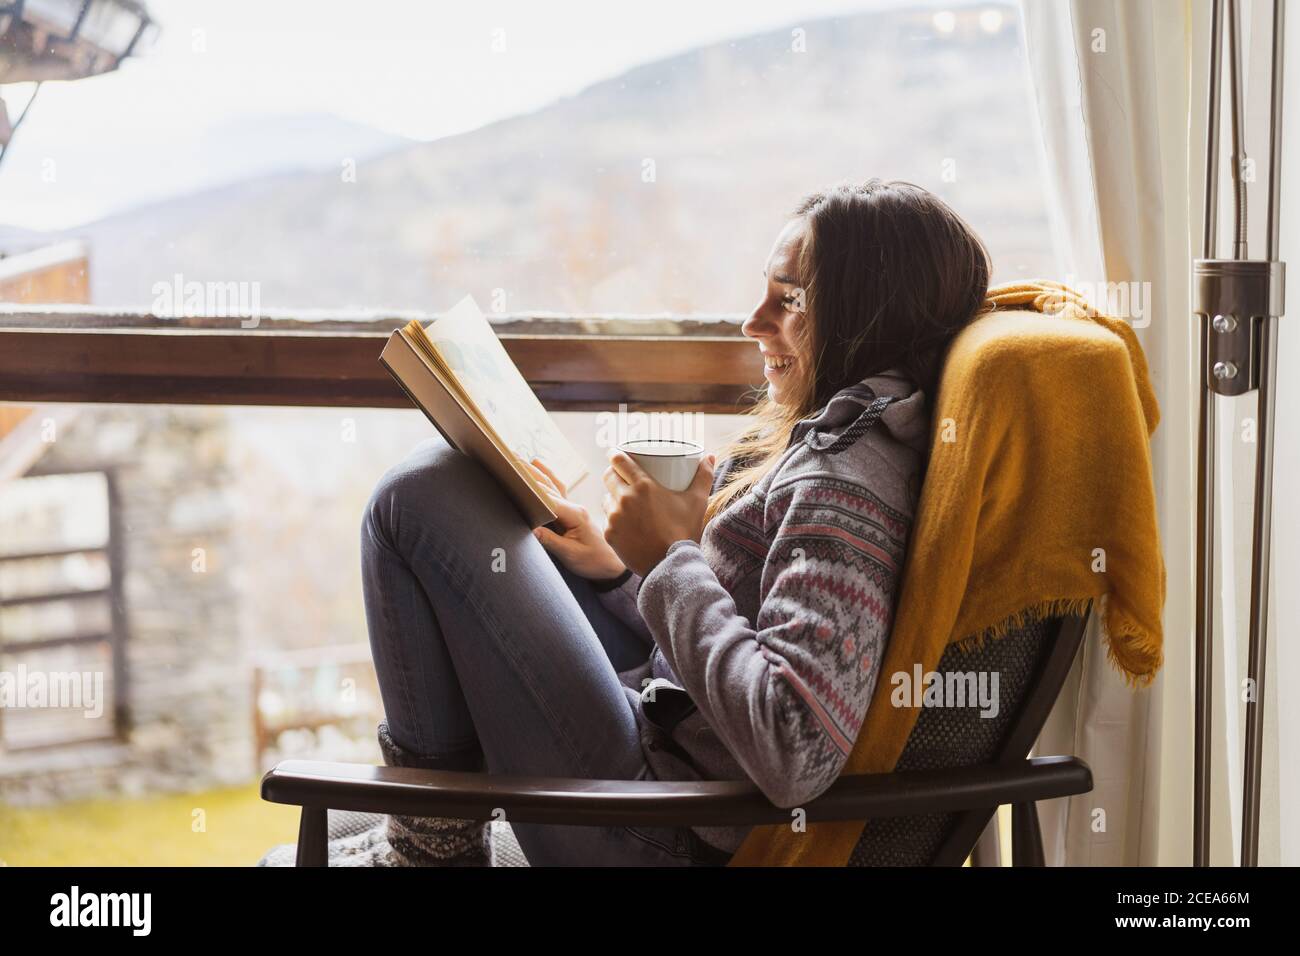 Vista lateral de la señorita con taza de fresco caliente beba leyendo un libro interesante mientras está sentado cerca de una ventana enorme habitación acogedora Foto de stock